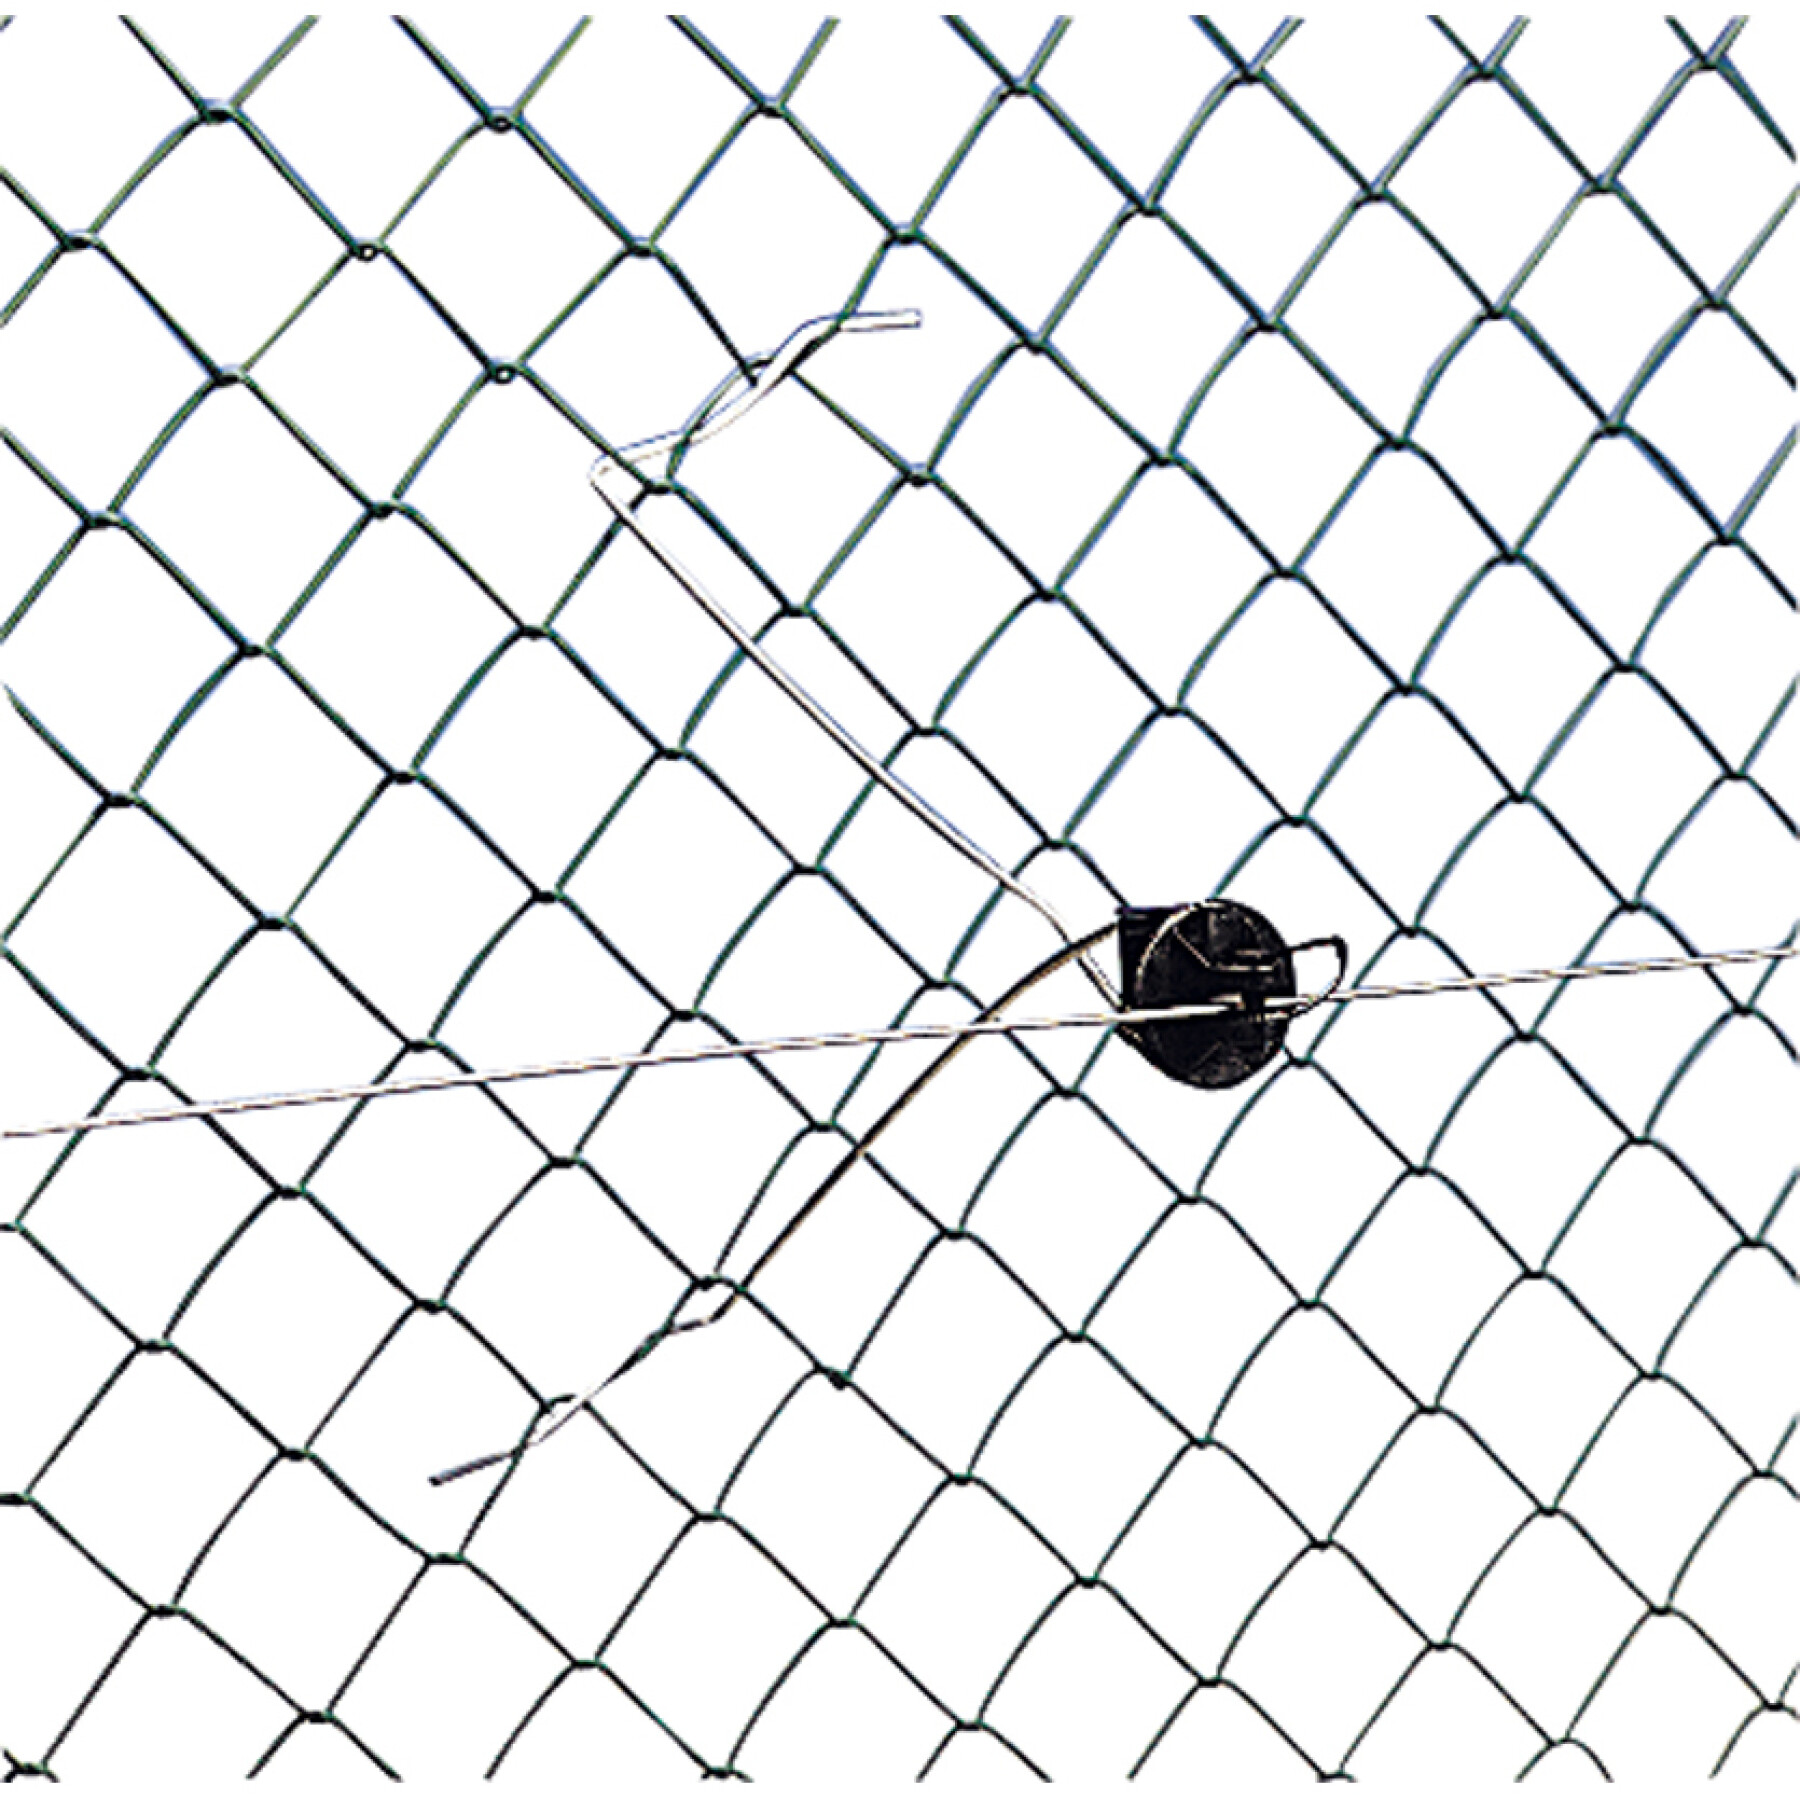 Isoladores para cercas eléctricas à distância especiais para redes de arame Gallagher (x25)